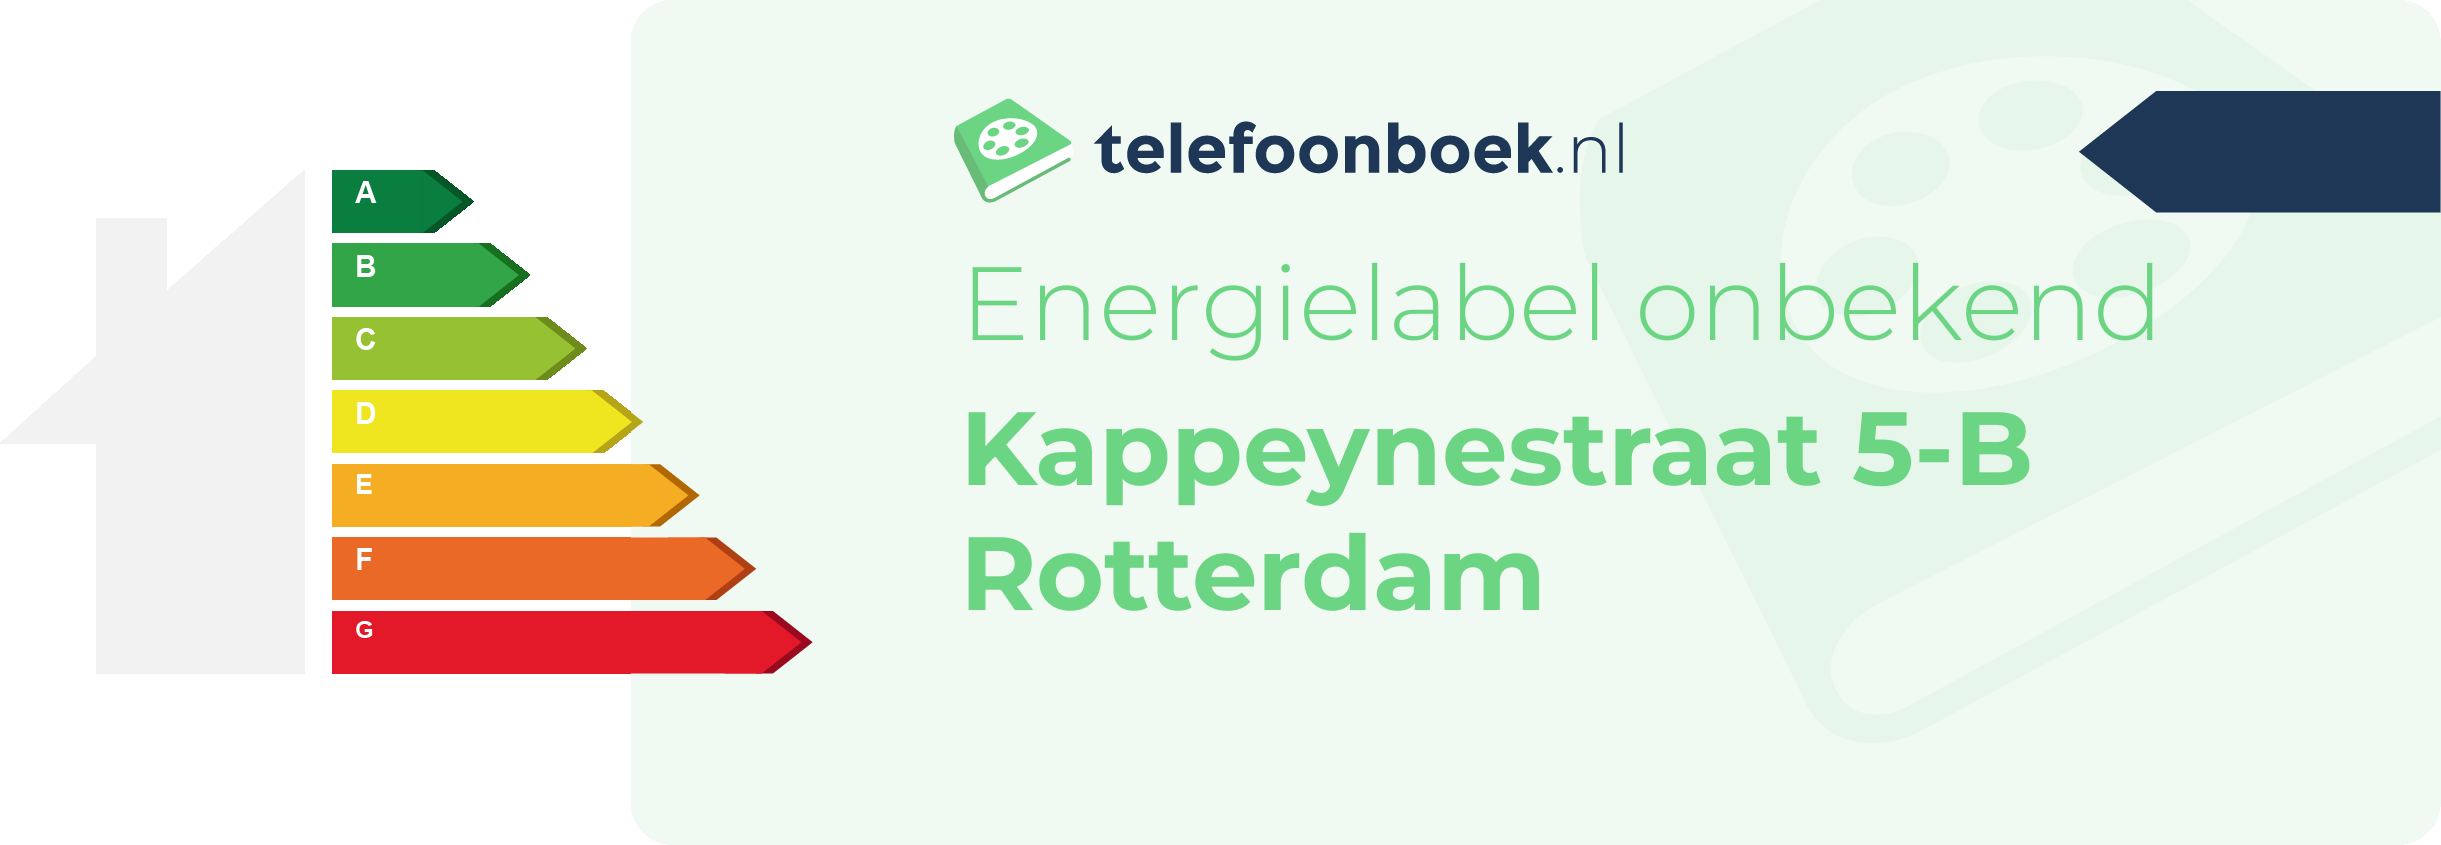 Energielabel Kappeynestraat 5-B Rotterdam